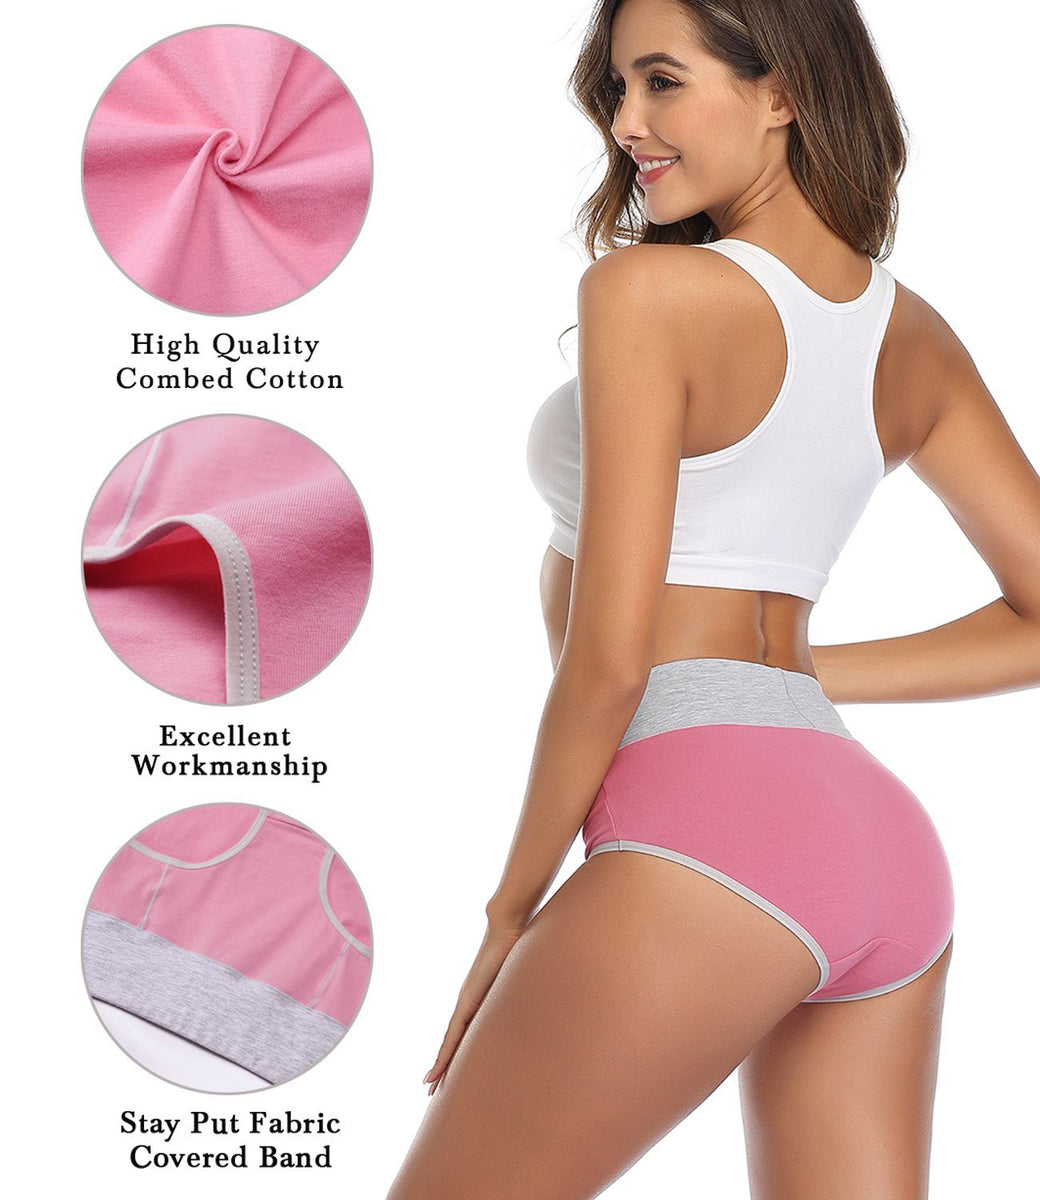 ikasus Women's Cotton Underwear Medium-waist Stretch Briefs Soft